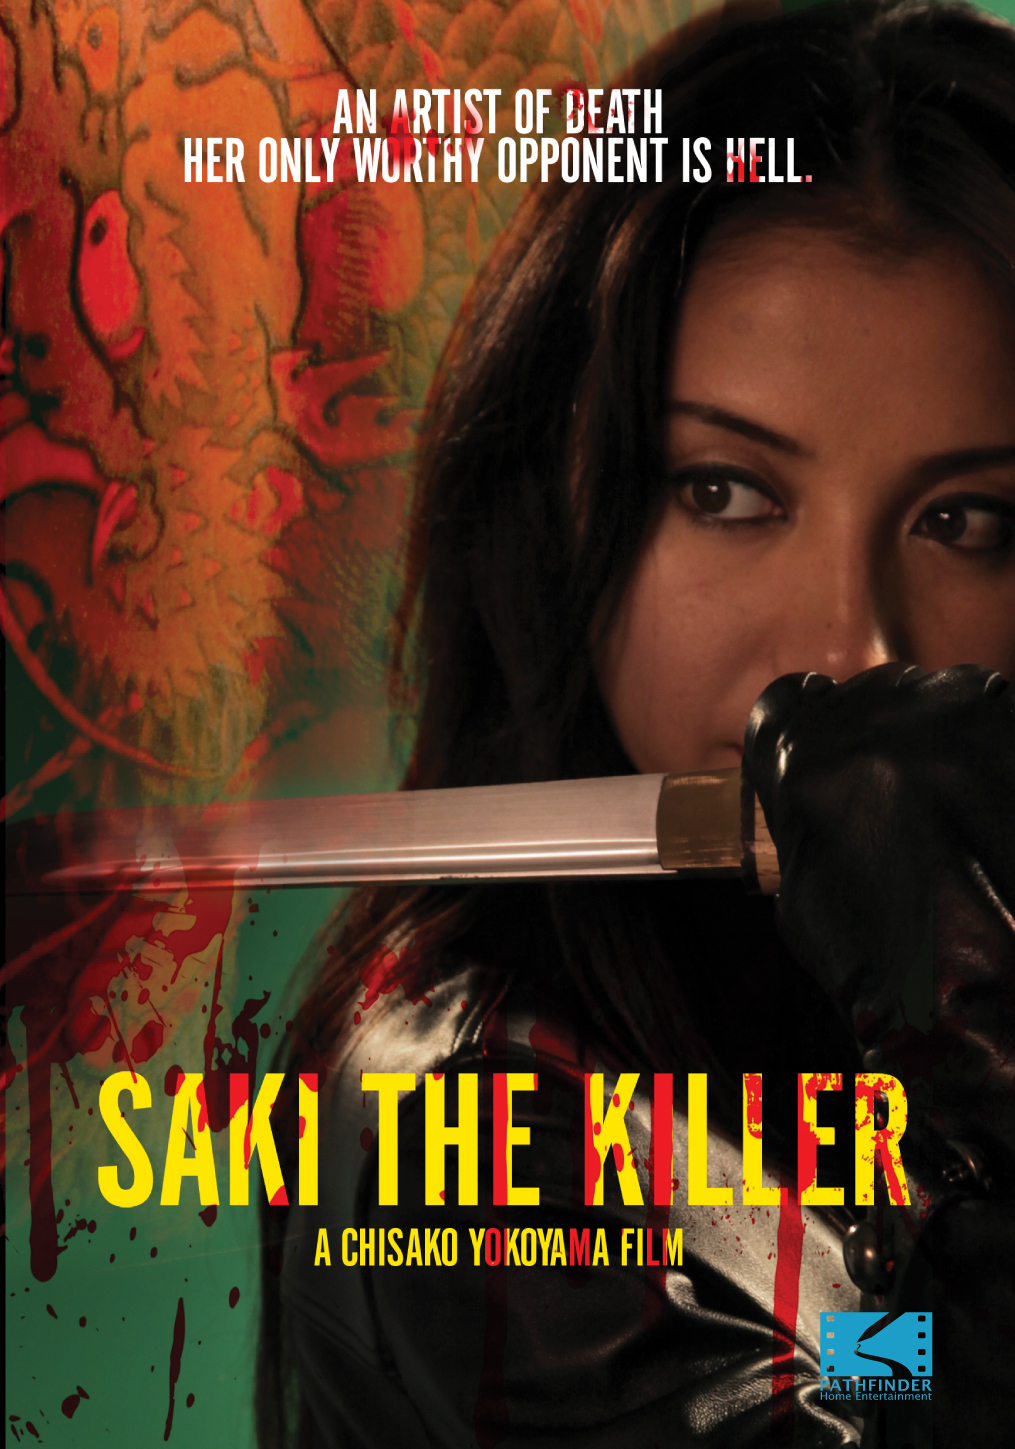 Saki the Killer (2011) Screenshot 2 